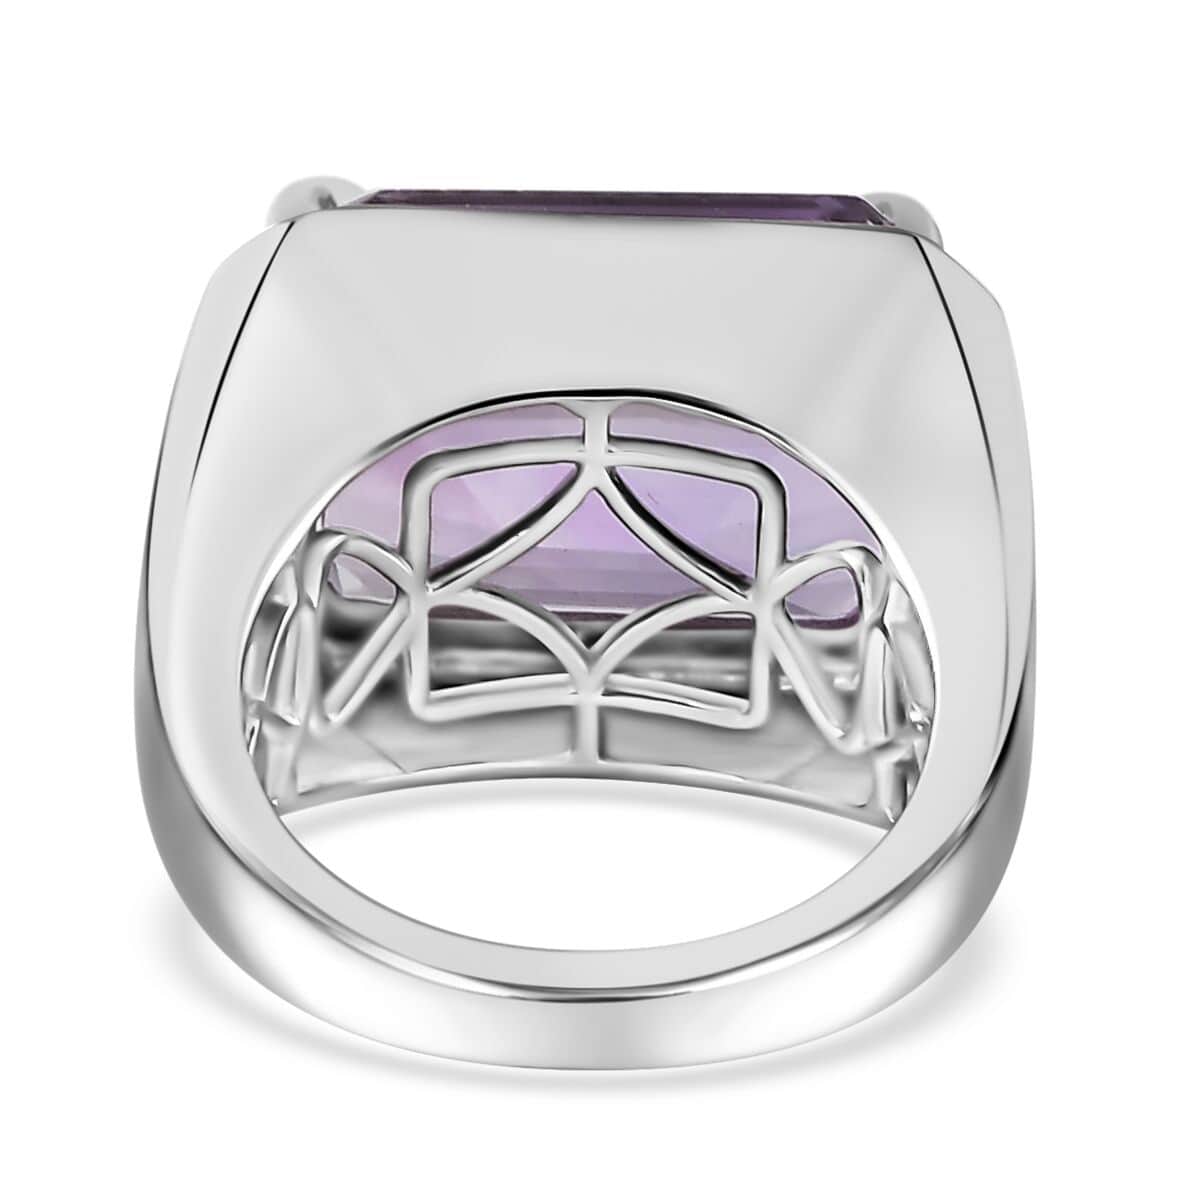 Premium Rose De France Amethyst Men's Ring in Platinum Over Sterling Silver (Size 10.0) 20.00 ctw image number 5